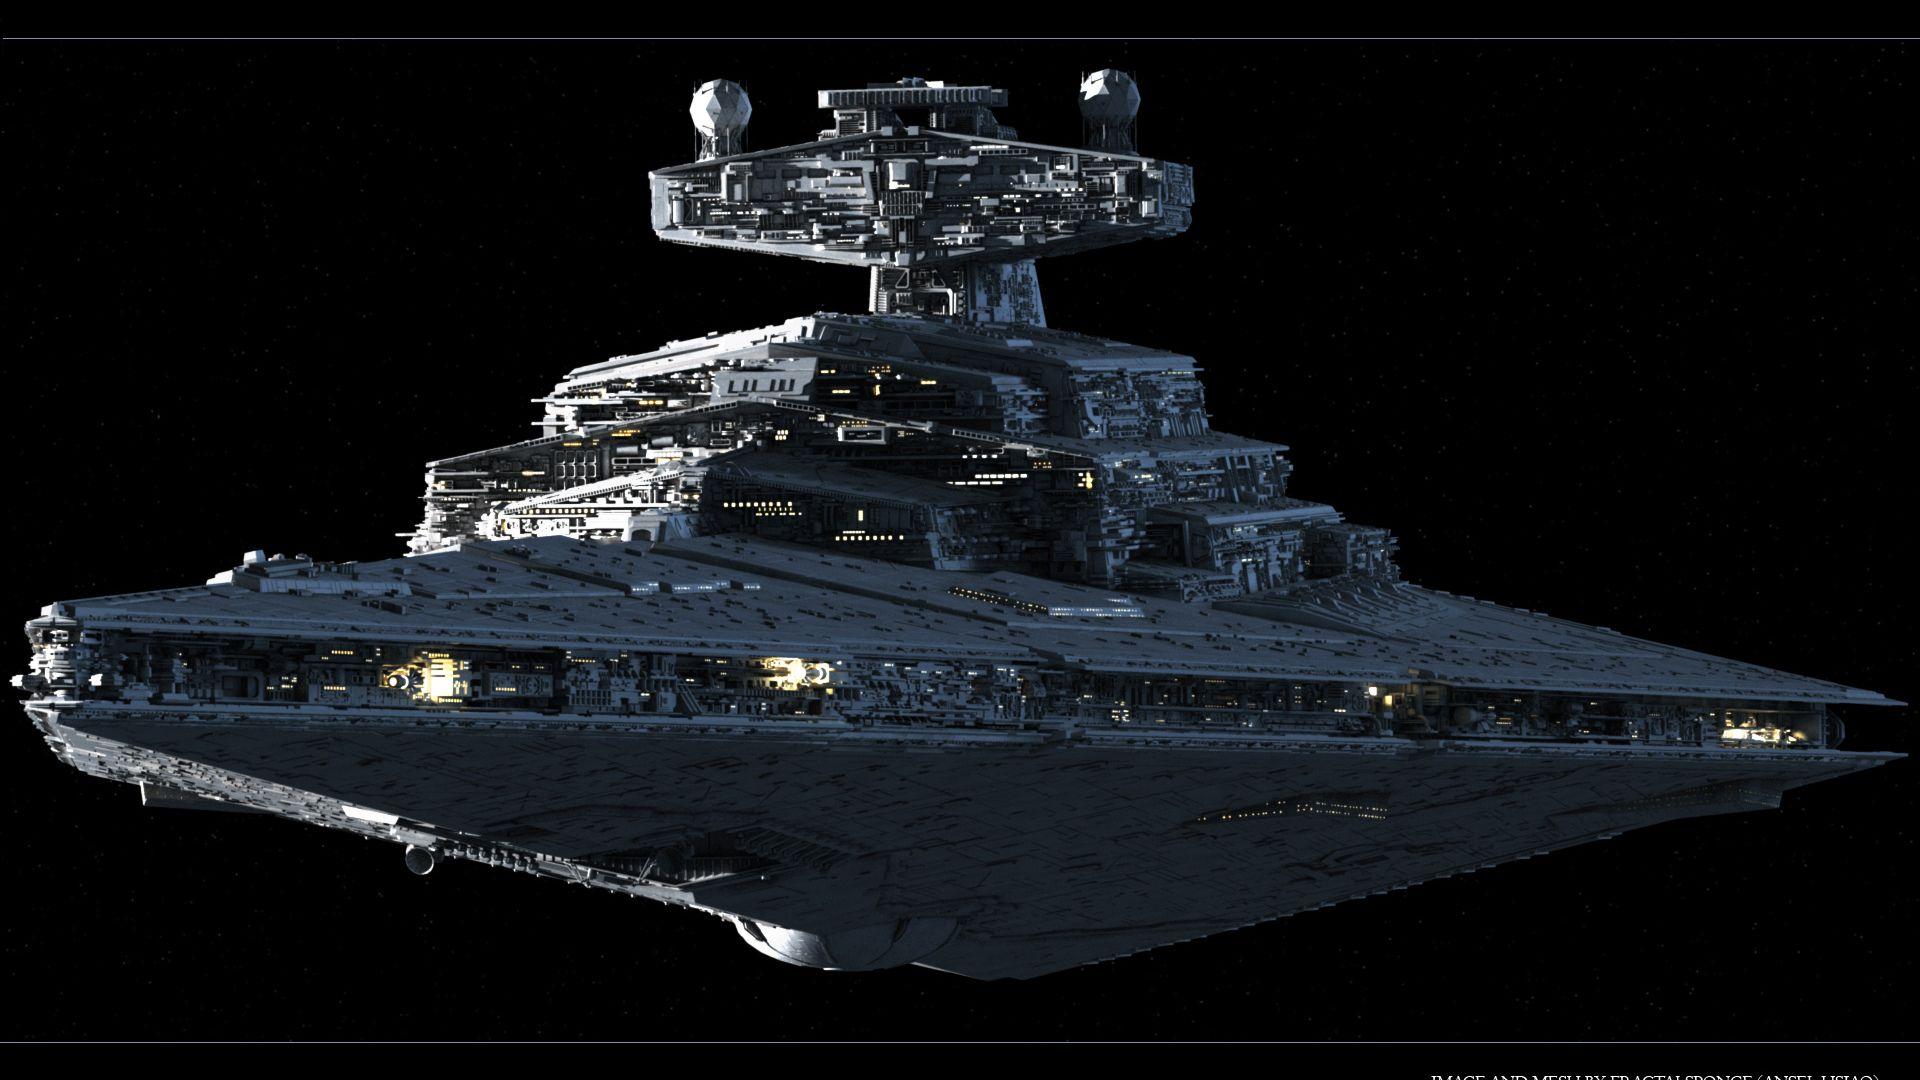 Spaceship Wallpaper. sci fi. Star destroyer, Star